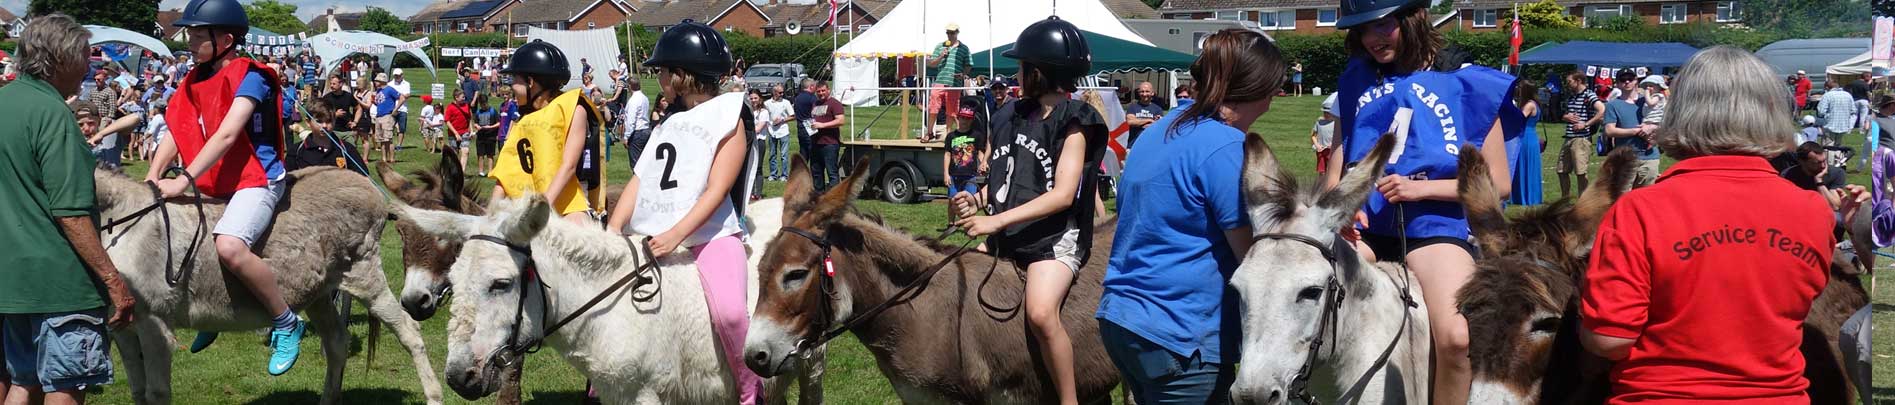 Twyford Donkey Derby